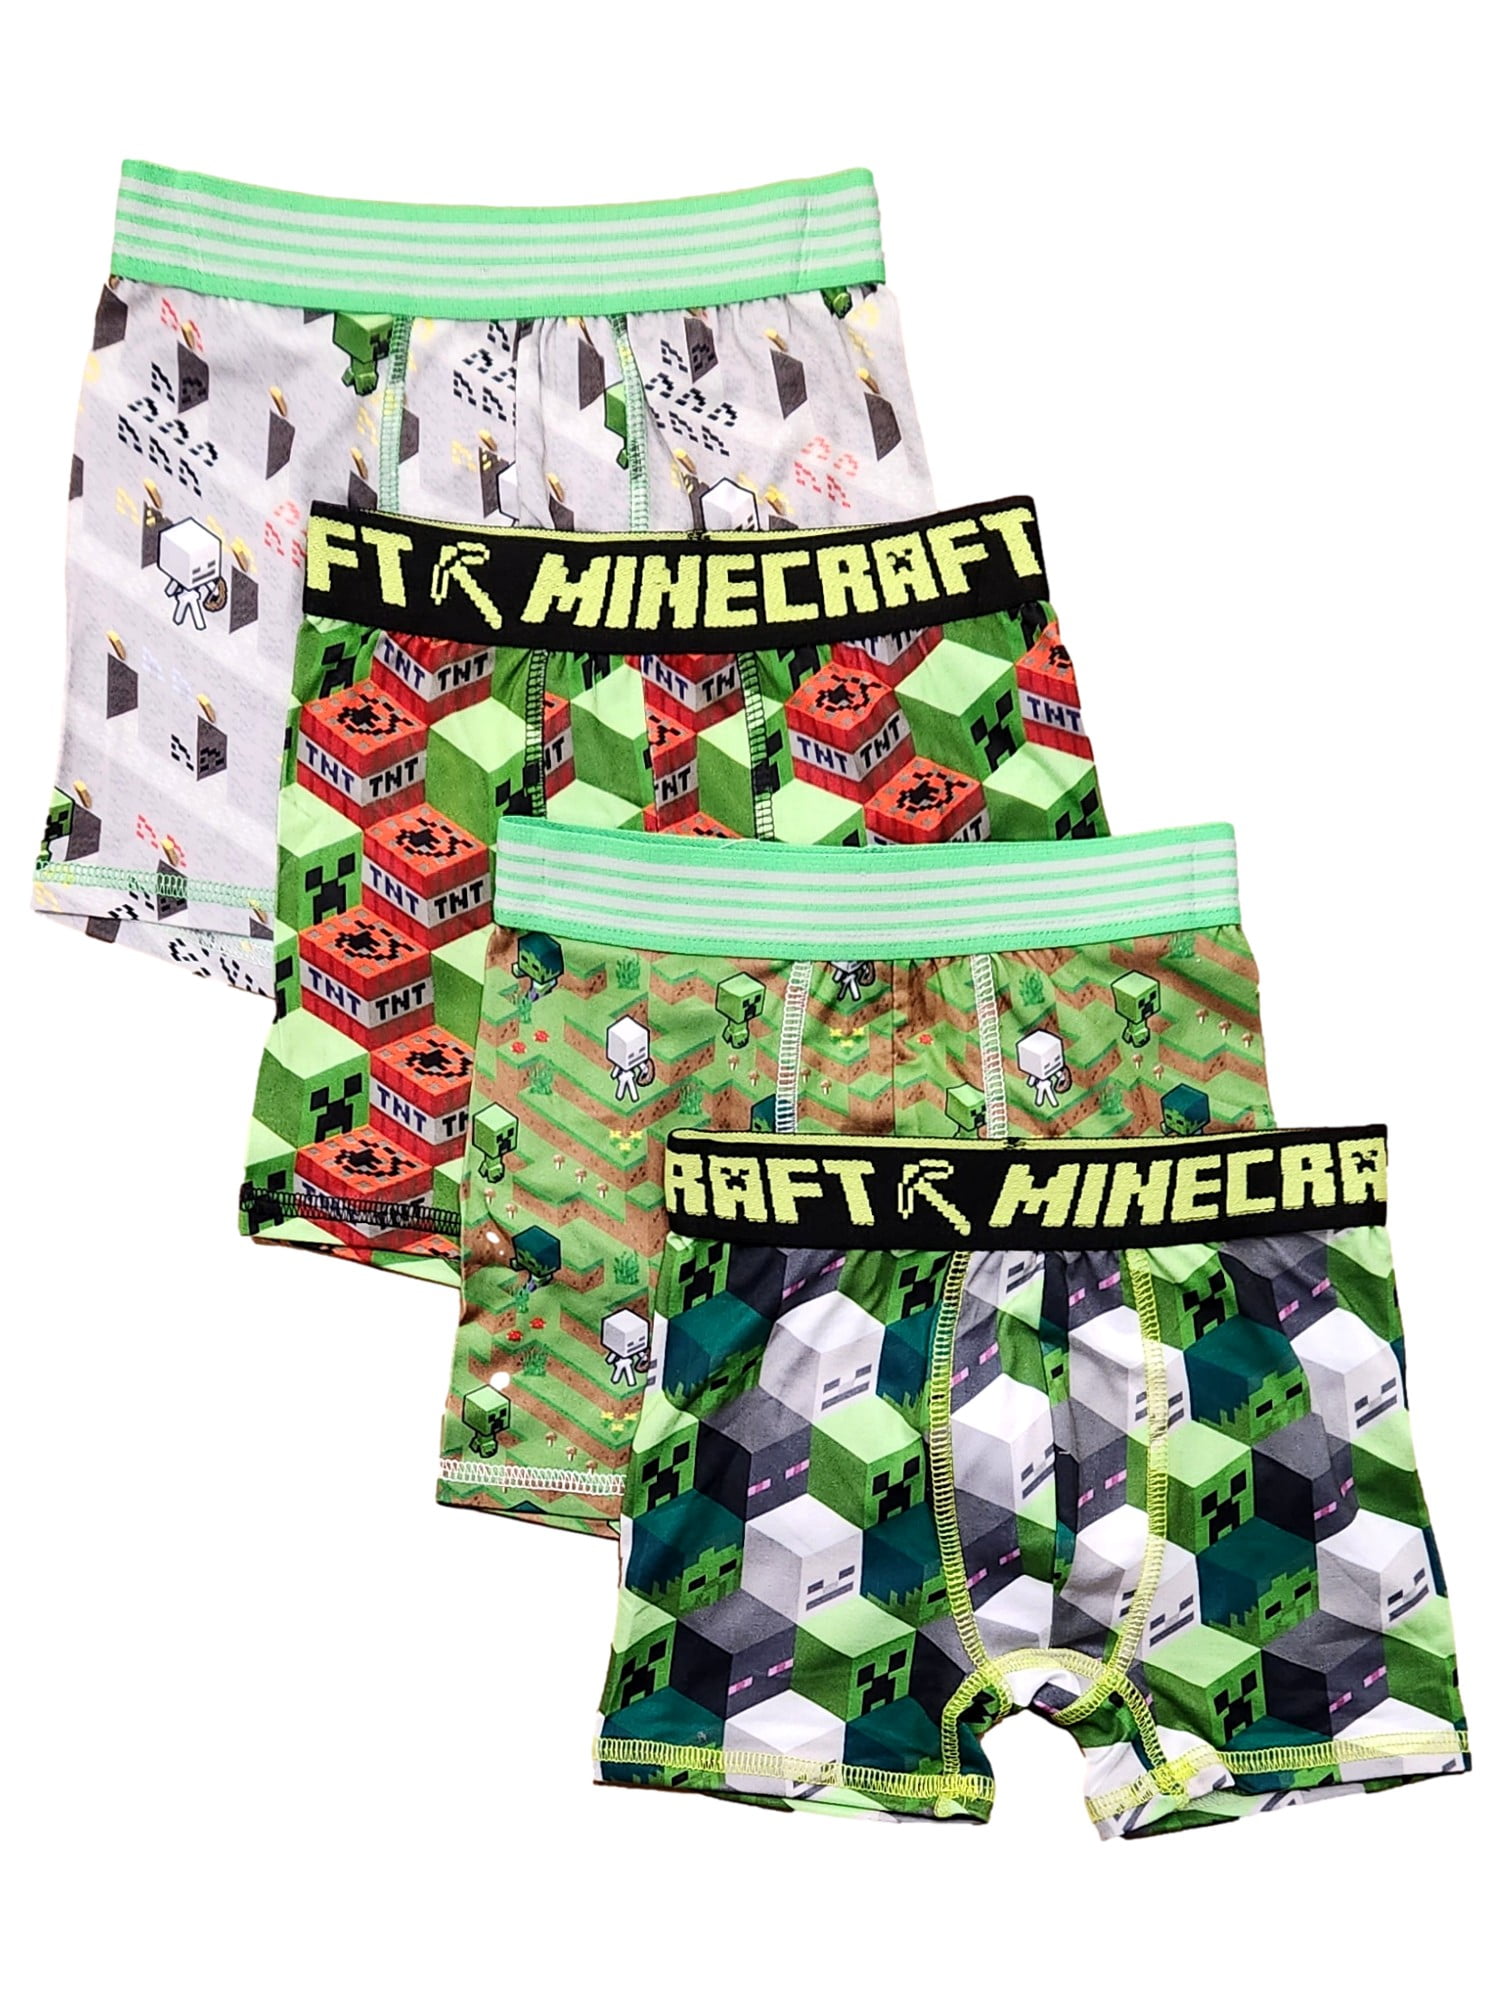 Minecraft Boy's All Over Print Boxer Briefs Underwear, 4-Pack, Sizes XS-XL